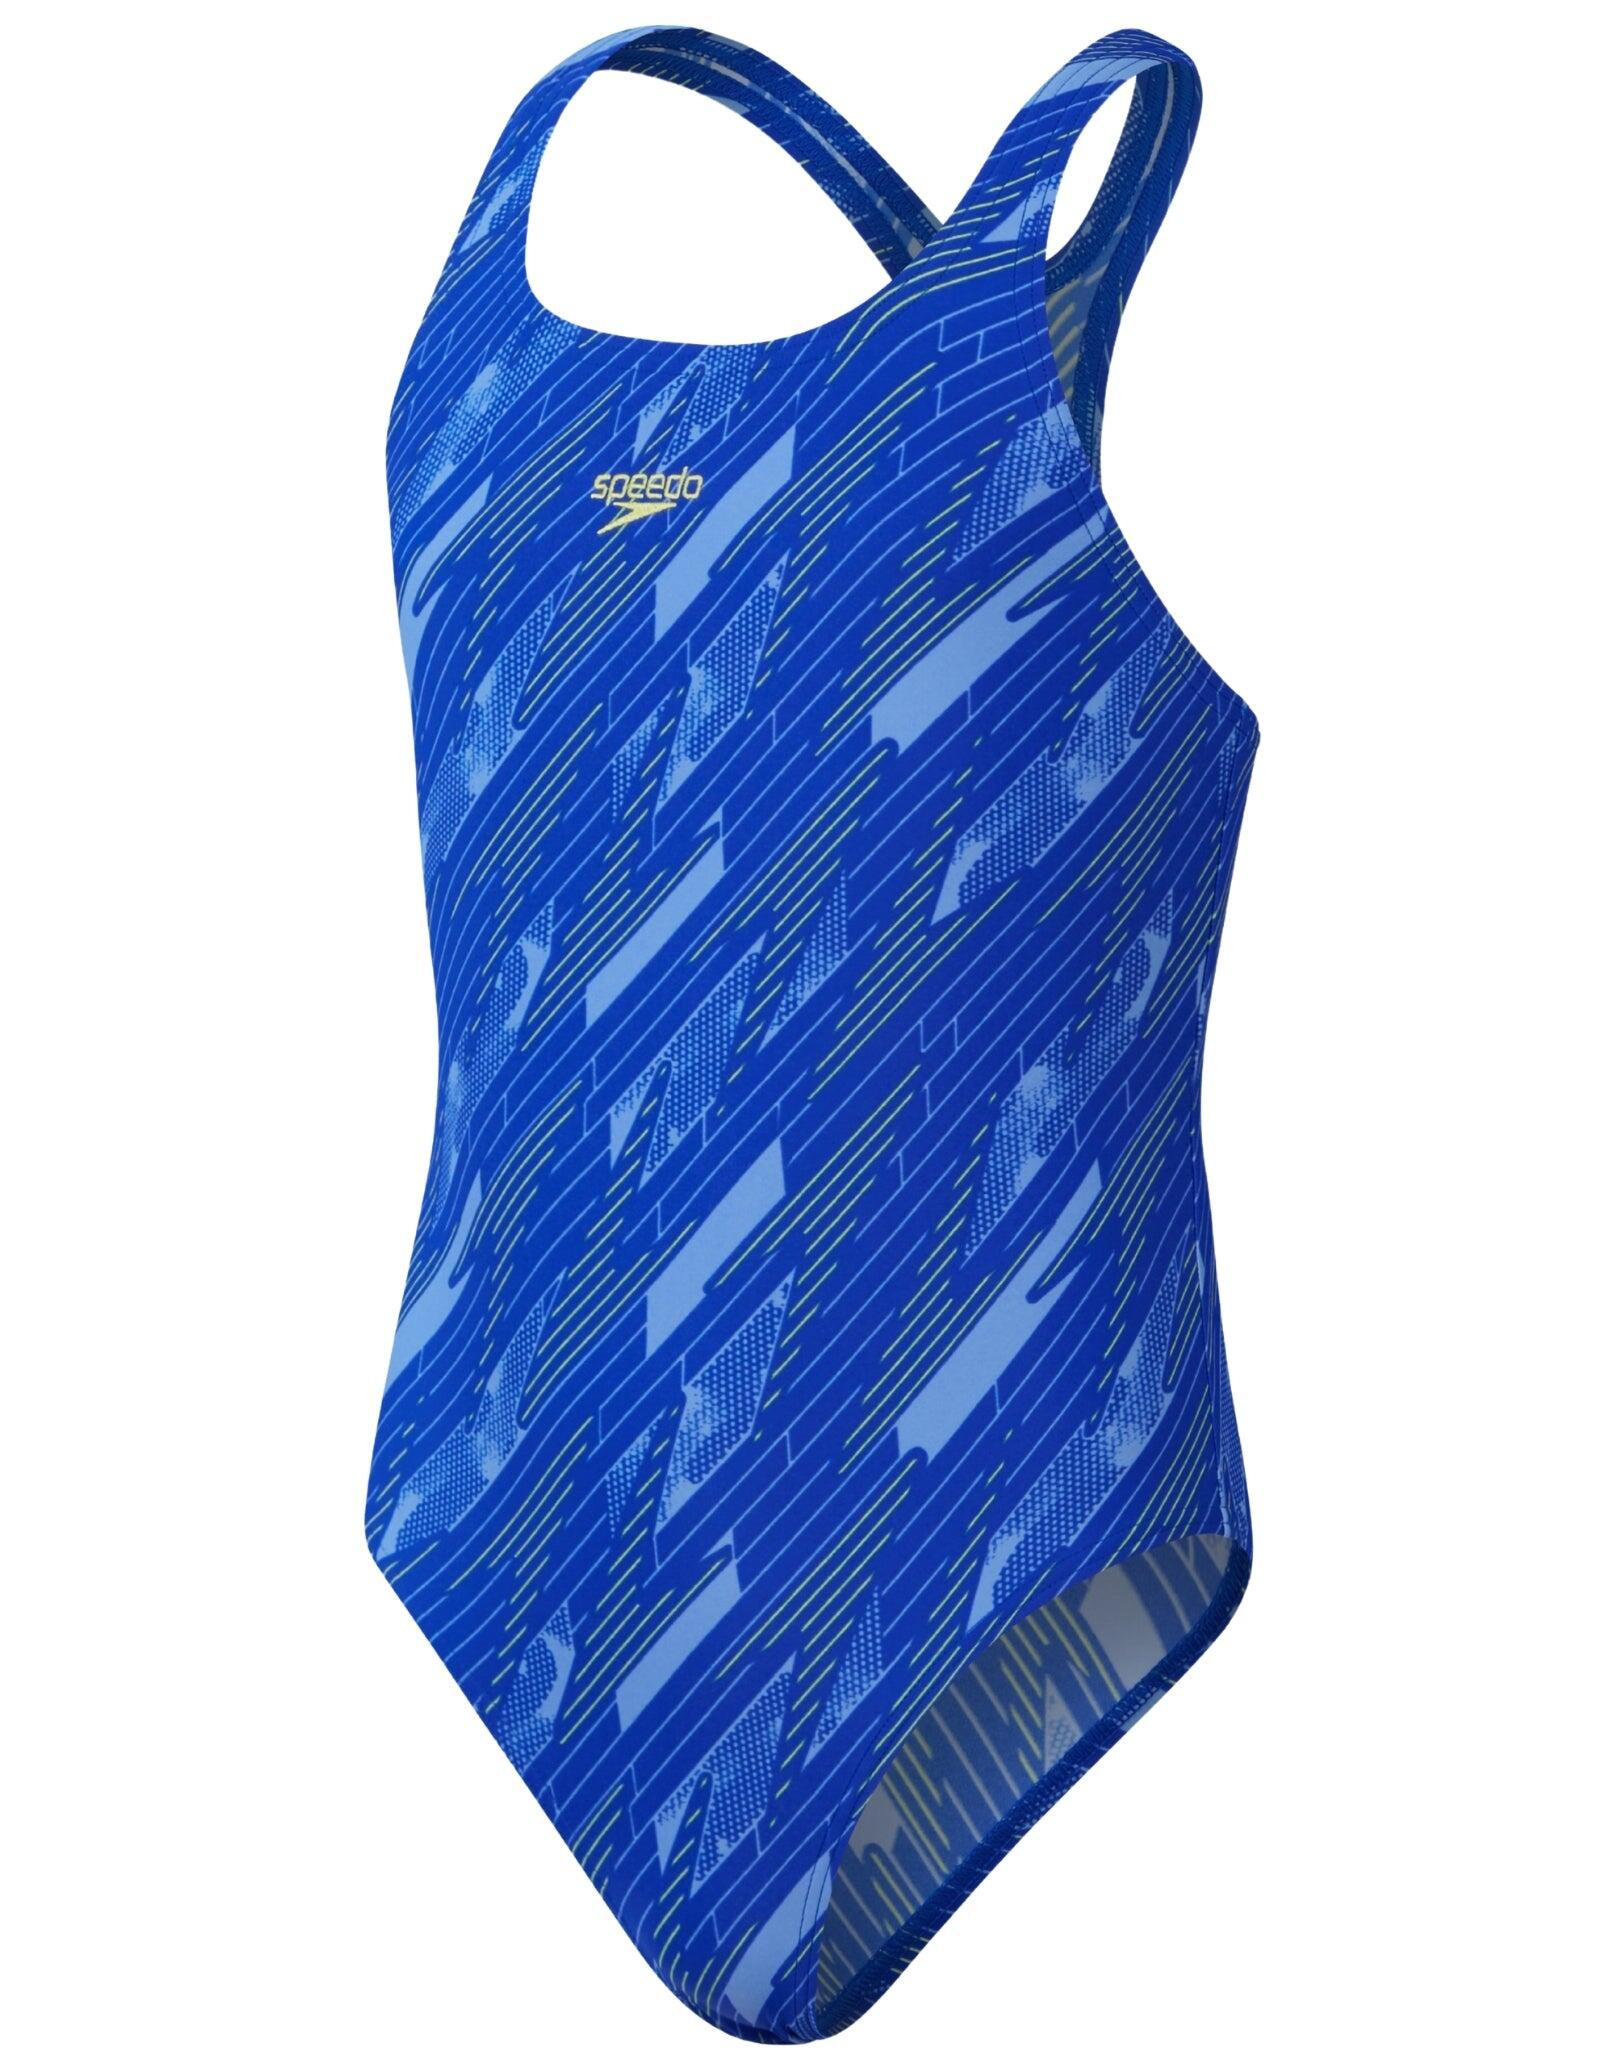 SPEEDO Speedo Girls Hyperboom Allover Medalist Swimsuit - Navy/Blue